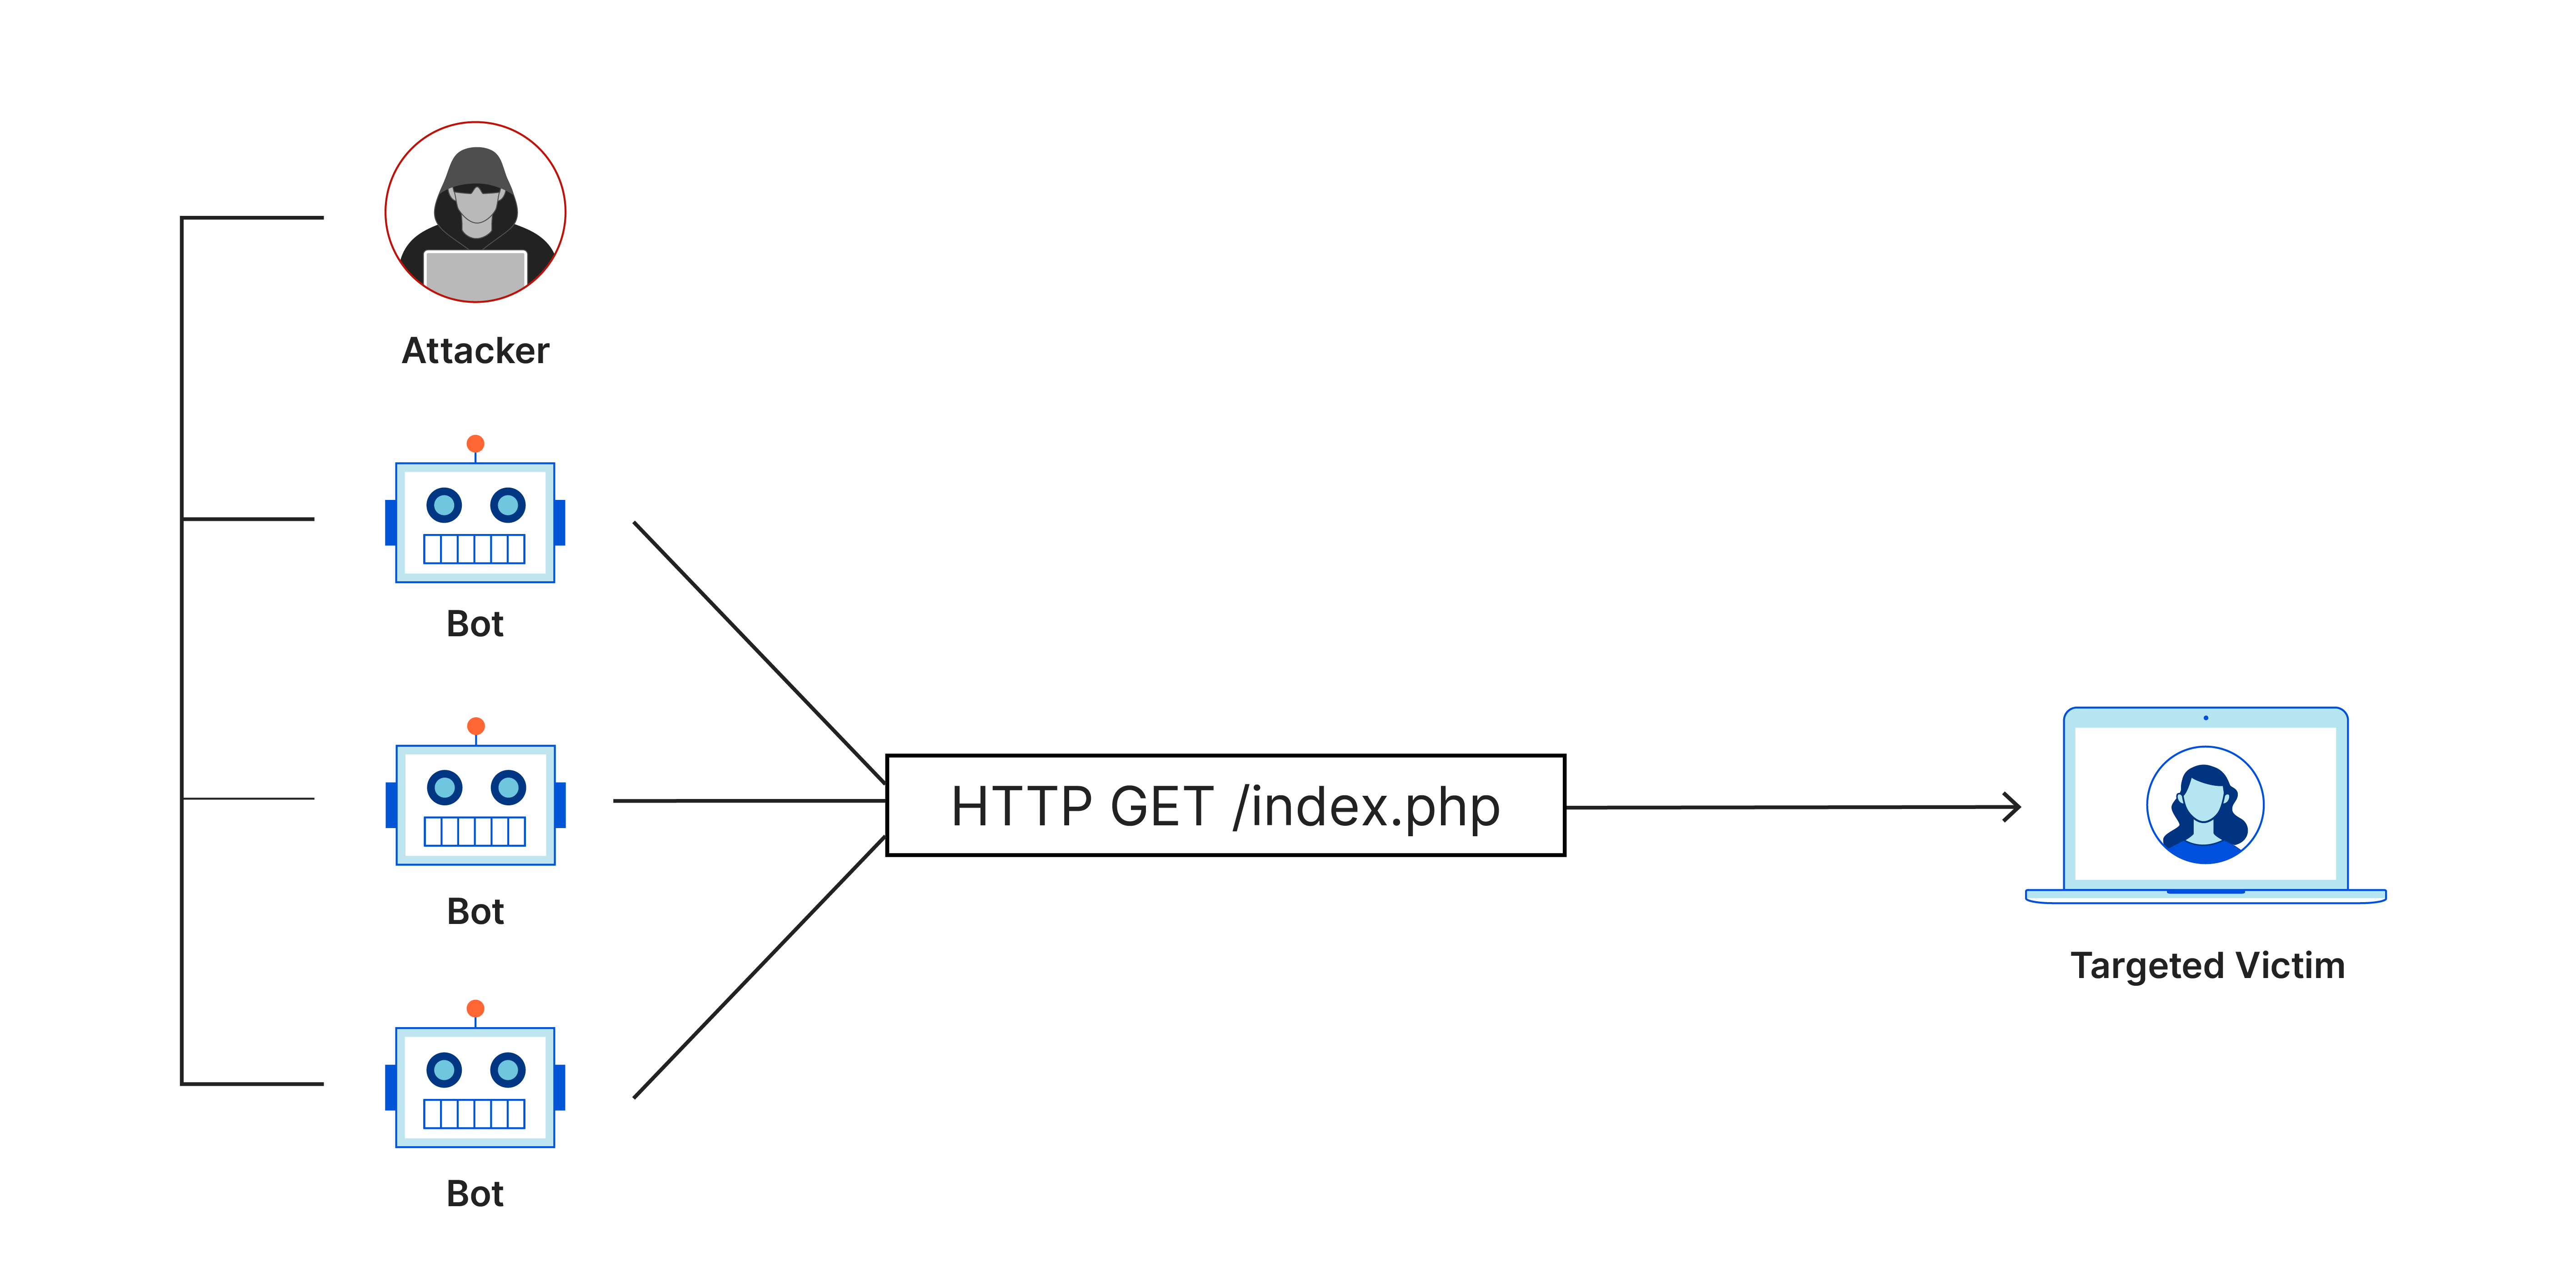 Ataque DDoS por inundación HTTP: varias solicitudes HTTP GET de bots a la víctima